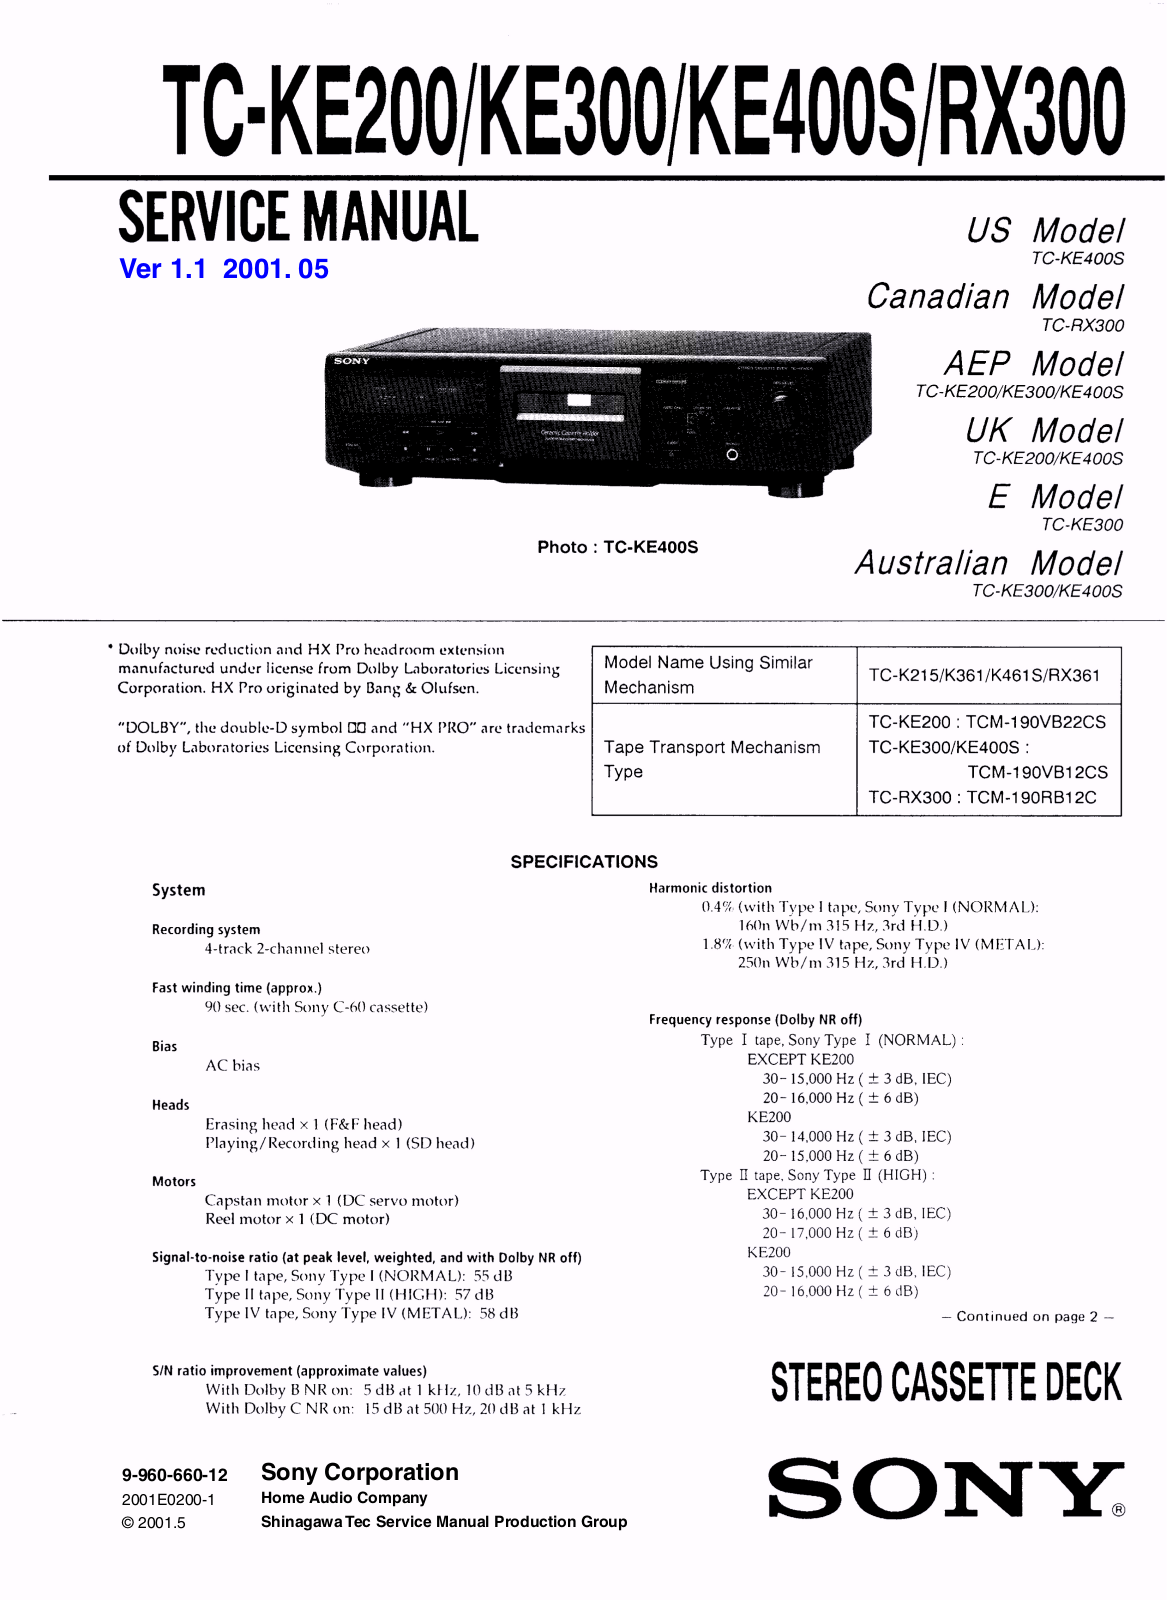 Sony TC-KE200, TC-KE300, TC-KE400S, TC-RX300 Service manual